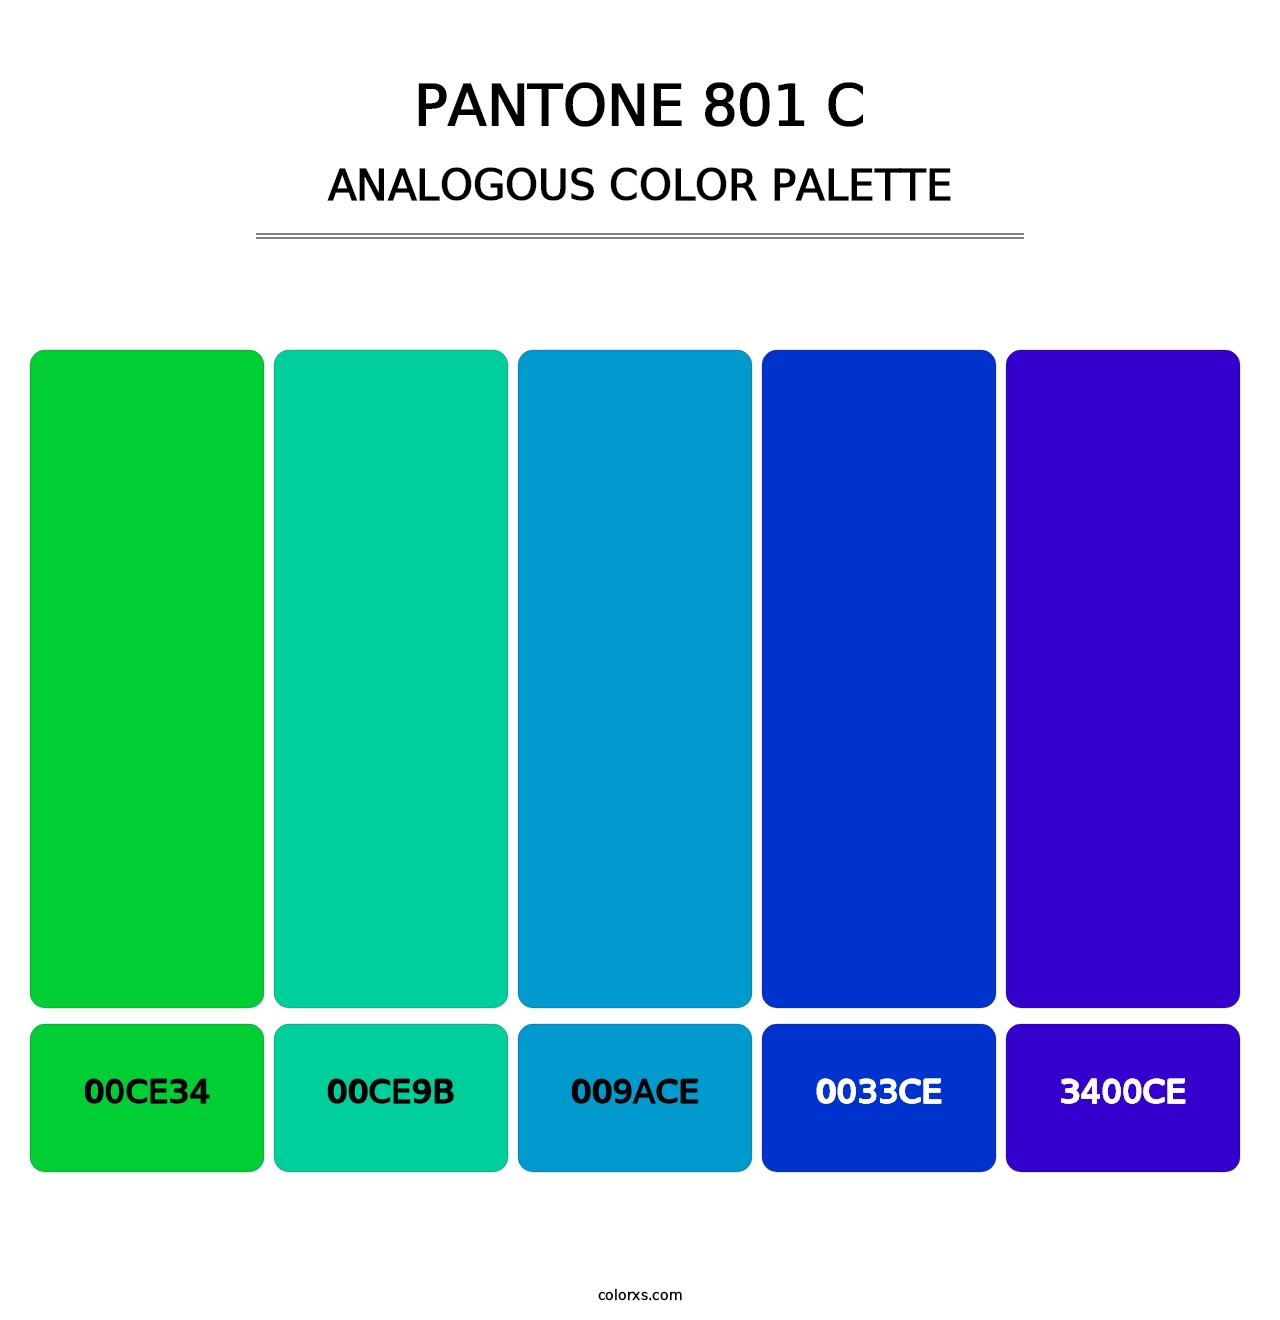 PANTONE 801 C - Analogous Color Palette